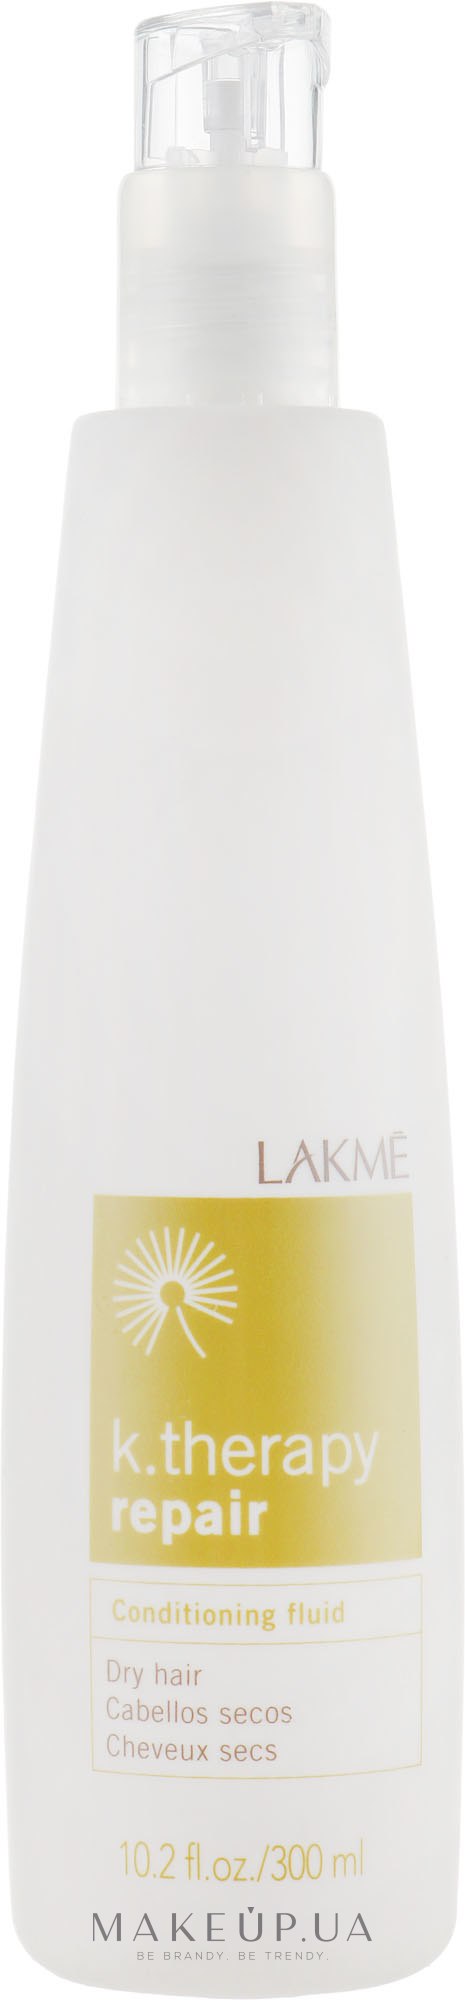 Питательный кондиционер для сухих волос - Lakme K.Therapy Repair Conditioning Fluid — фото 300ml